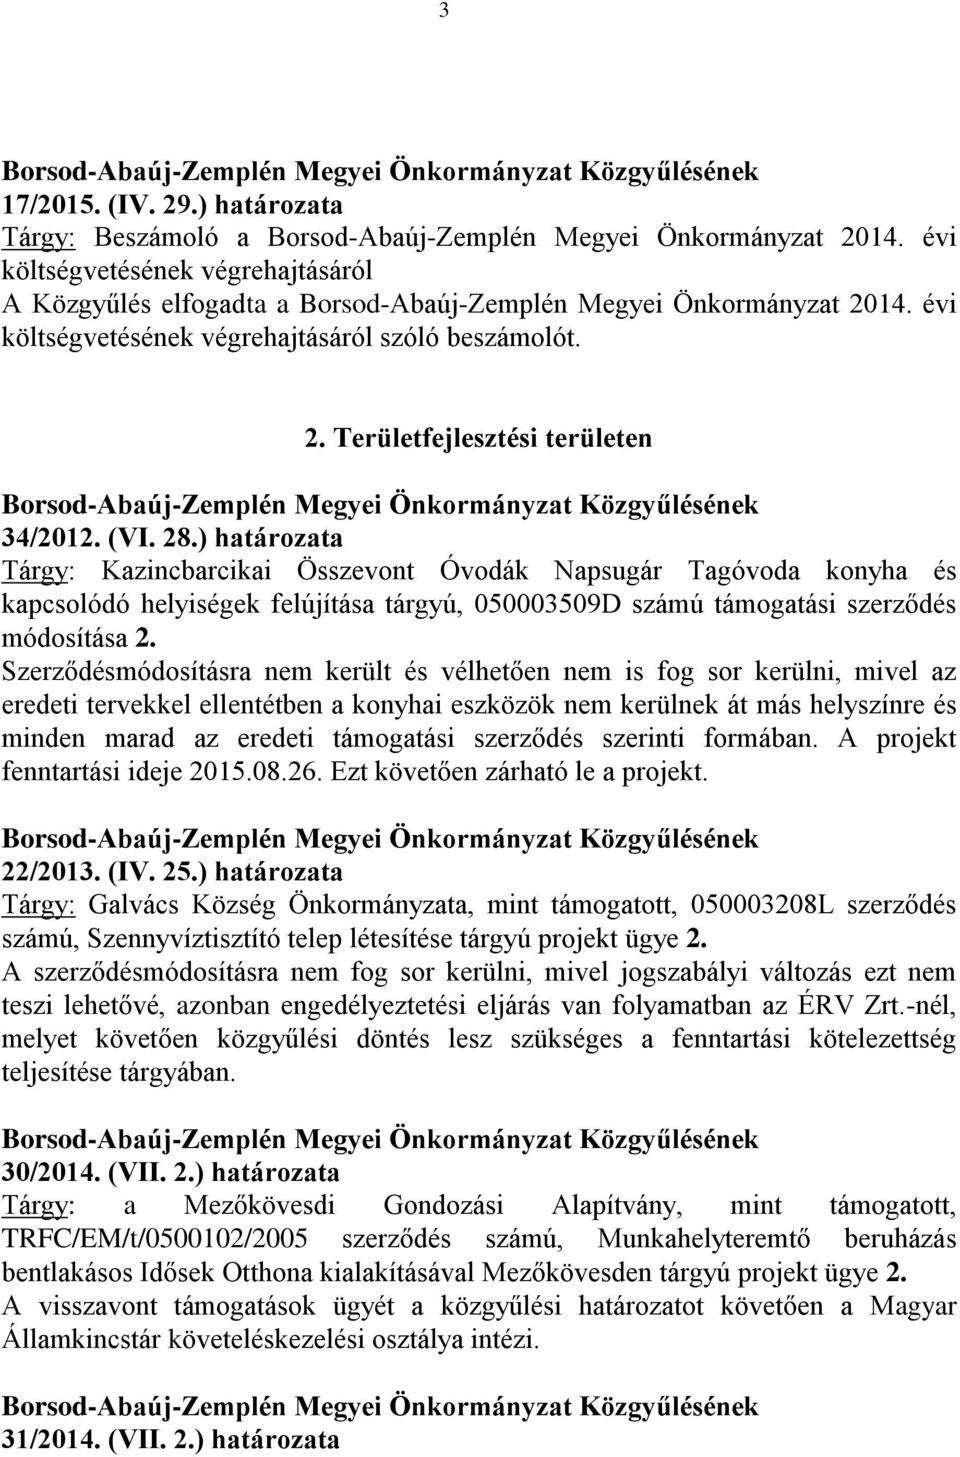 (VI. 28.) határozata Tárgy: Kazincbarcikai Összevont Óvodák Napsugár Tagóvoda konyha és kapcsolódó helyiségek felújítása tárgyú, 050003509D számú támogatási szerződés módosítása 2.